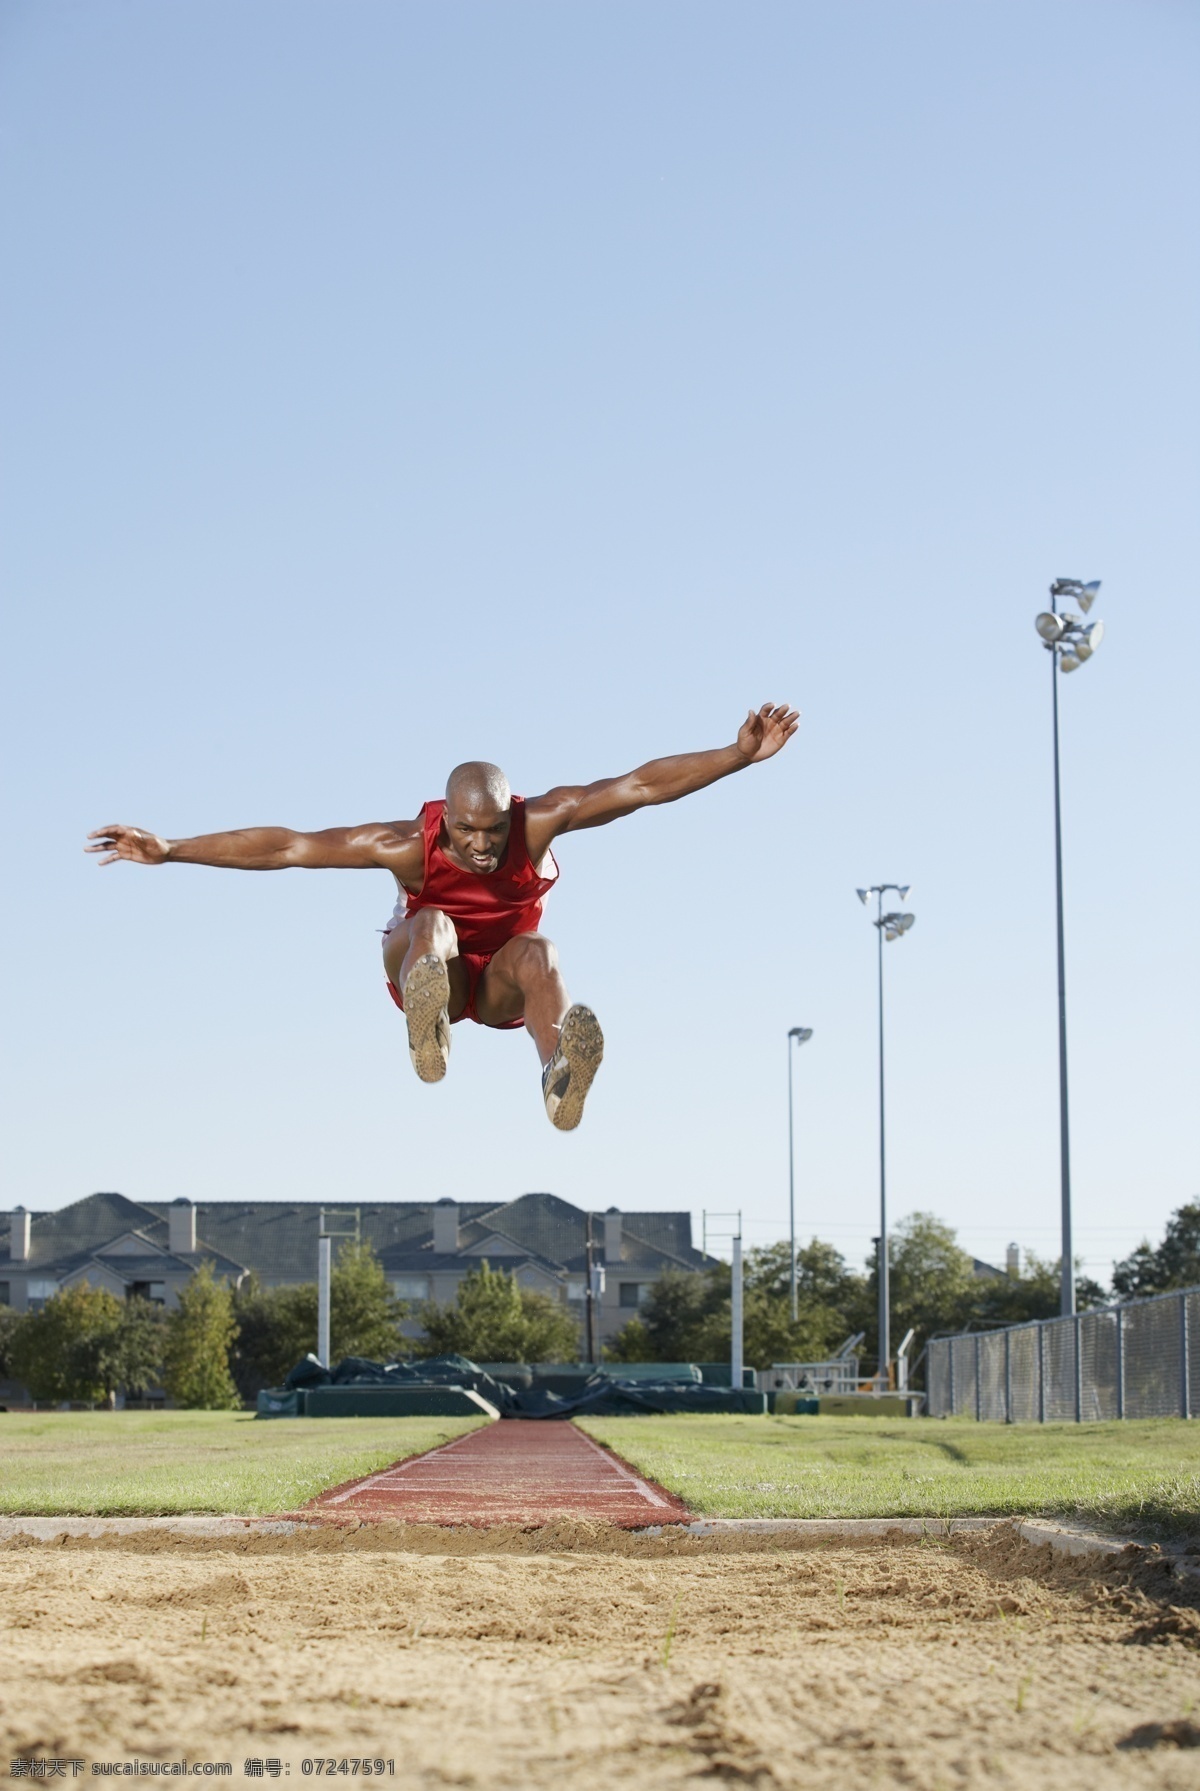 跳远 黑人 女性 运动员 体育运动 体育项目 体育比赛 外国人 男性 三级跳 沙坑 摄影图 高清图片 生活百科